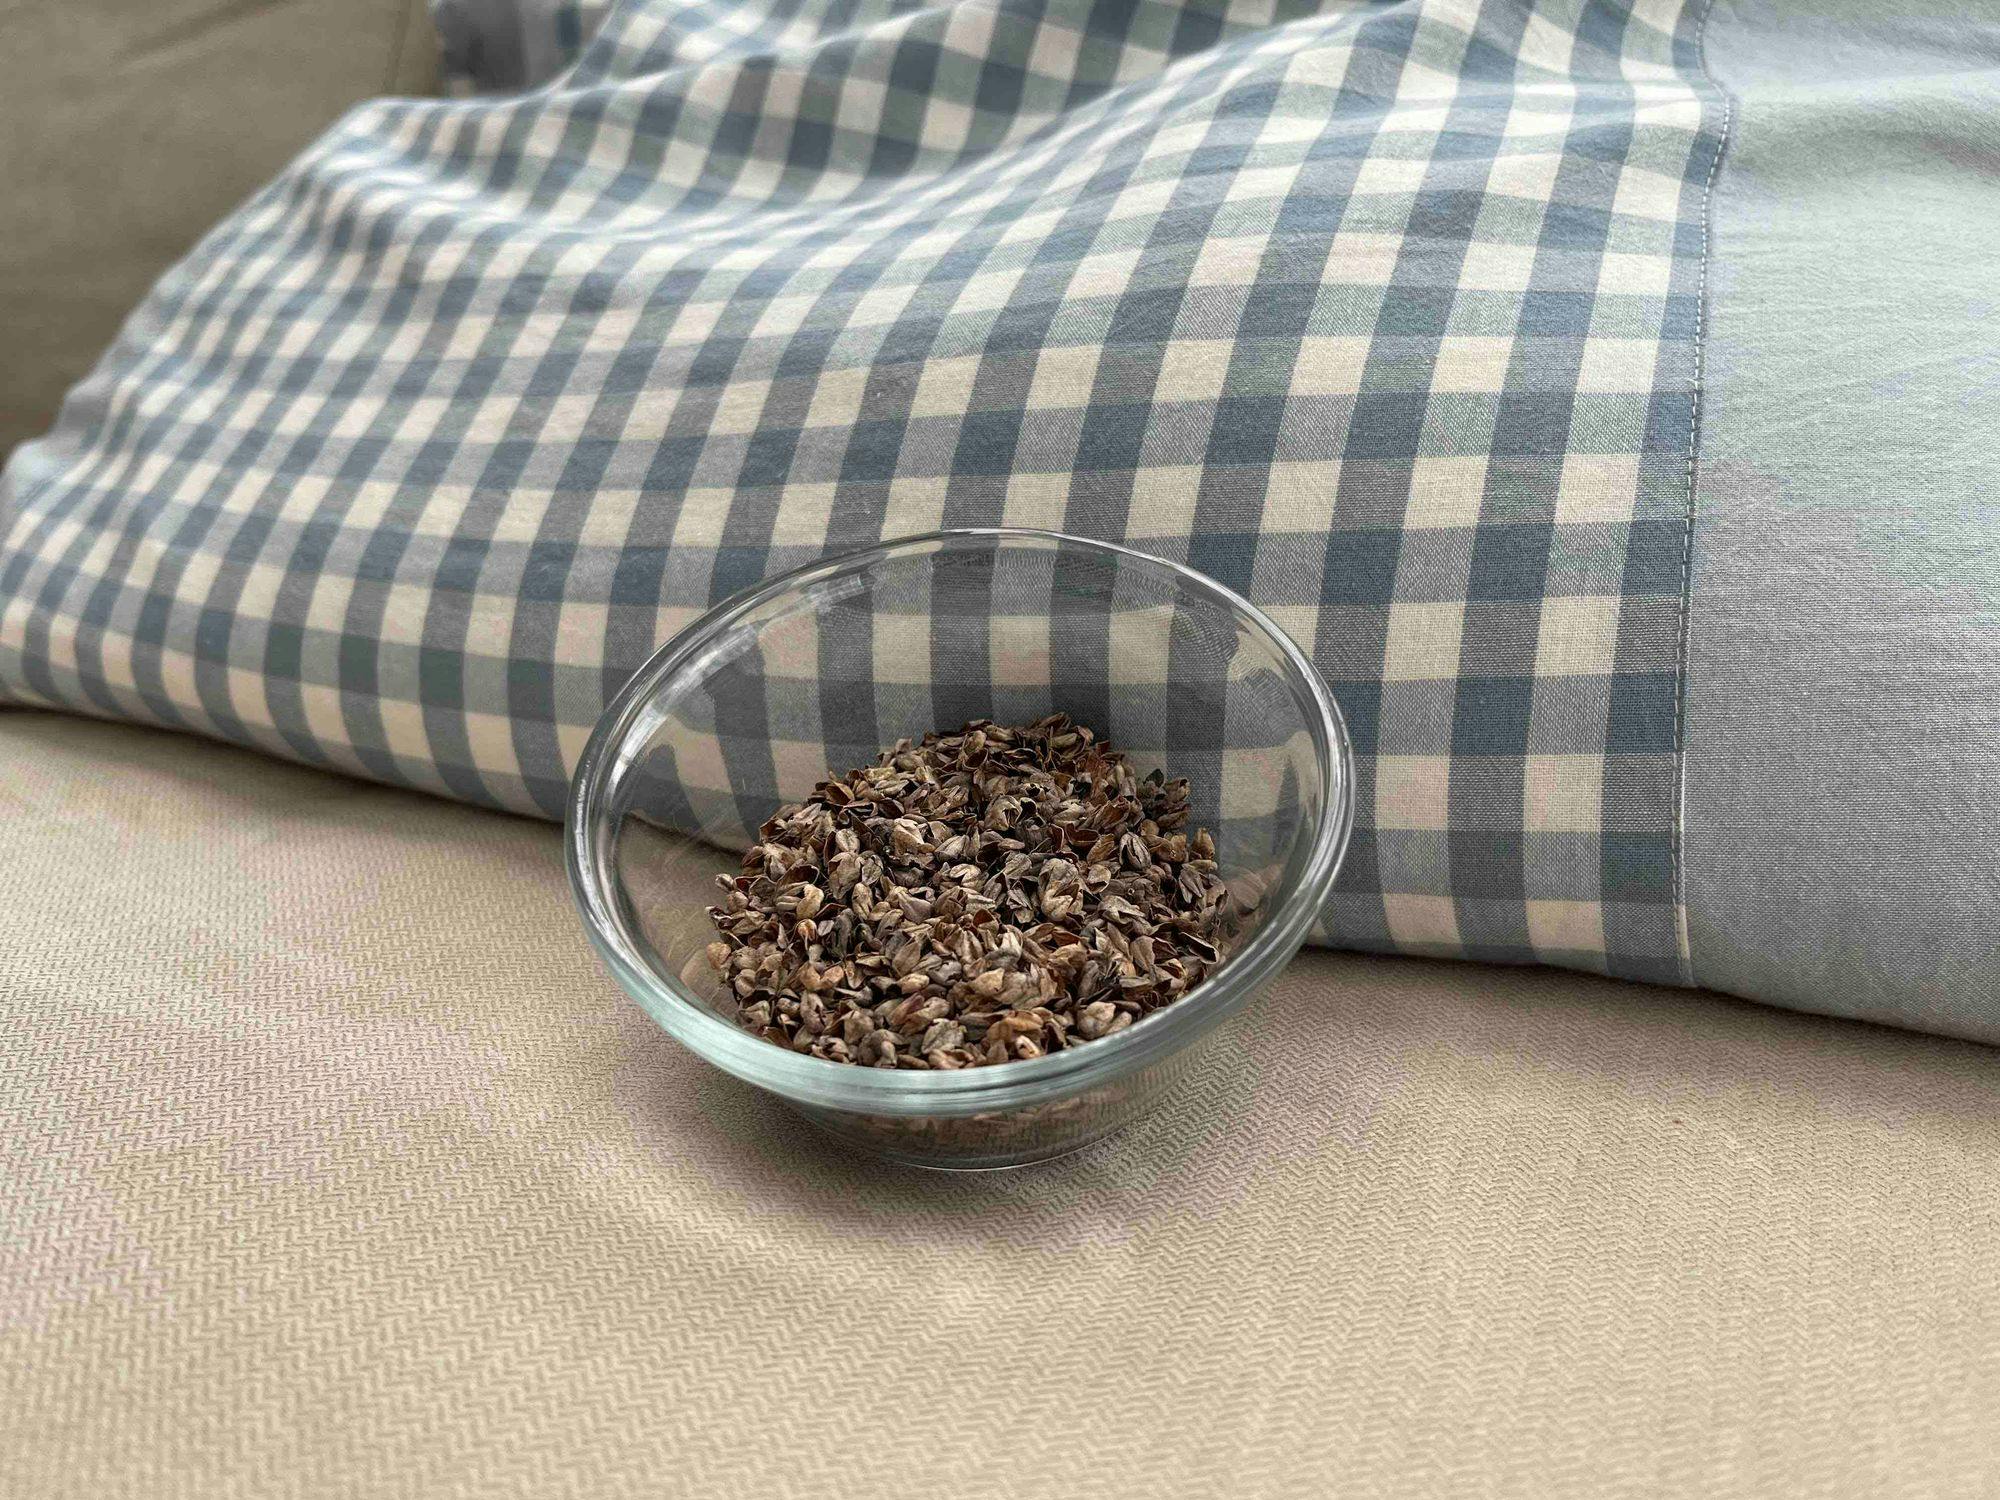 Buckwheat hull next to a buckwheat pillow